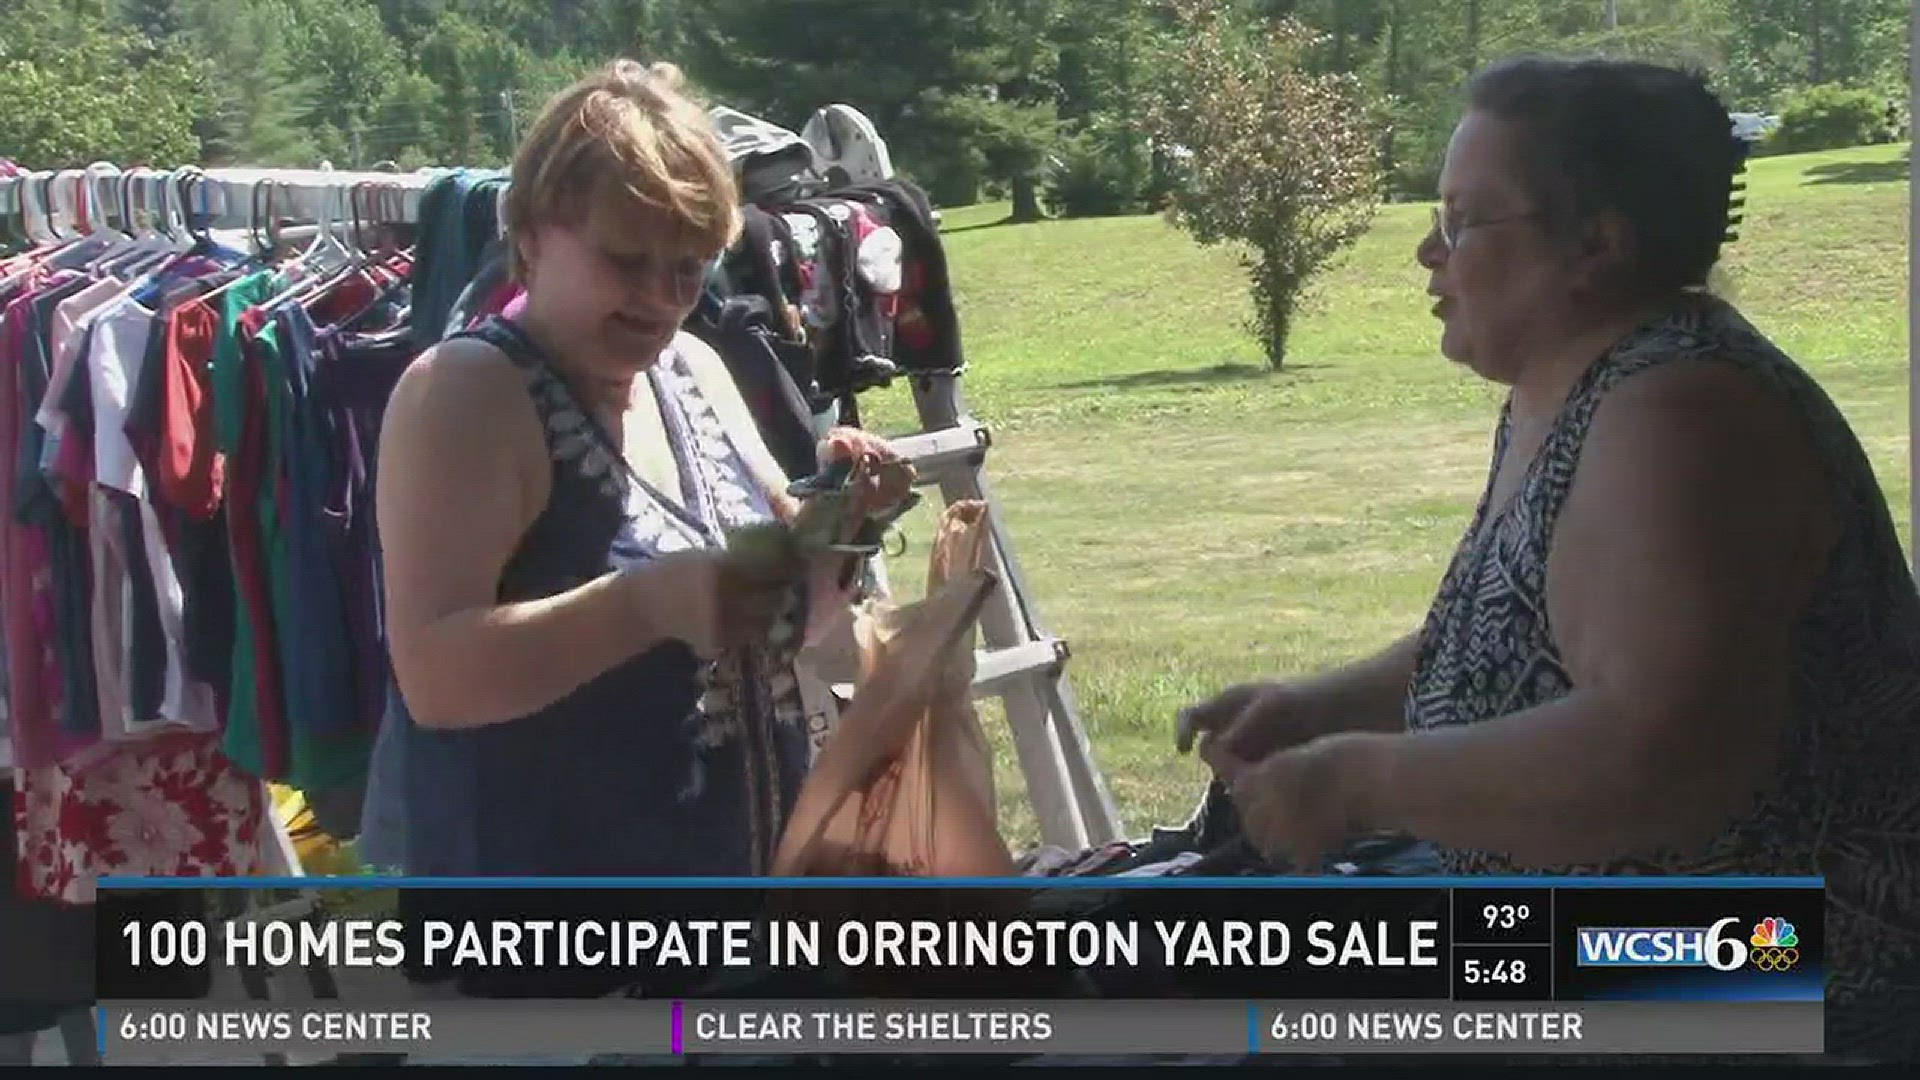 "Endless yard sale" in Orrington